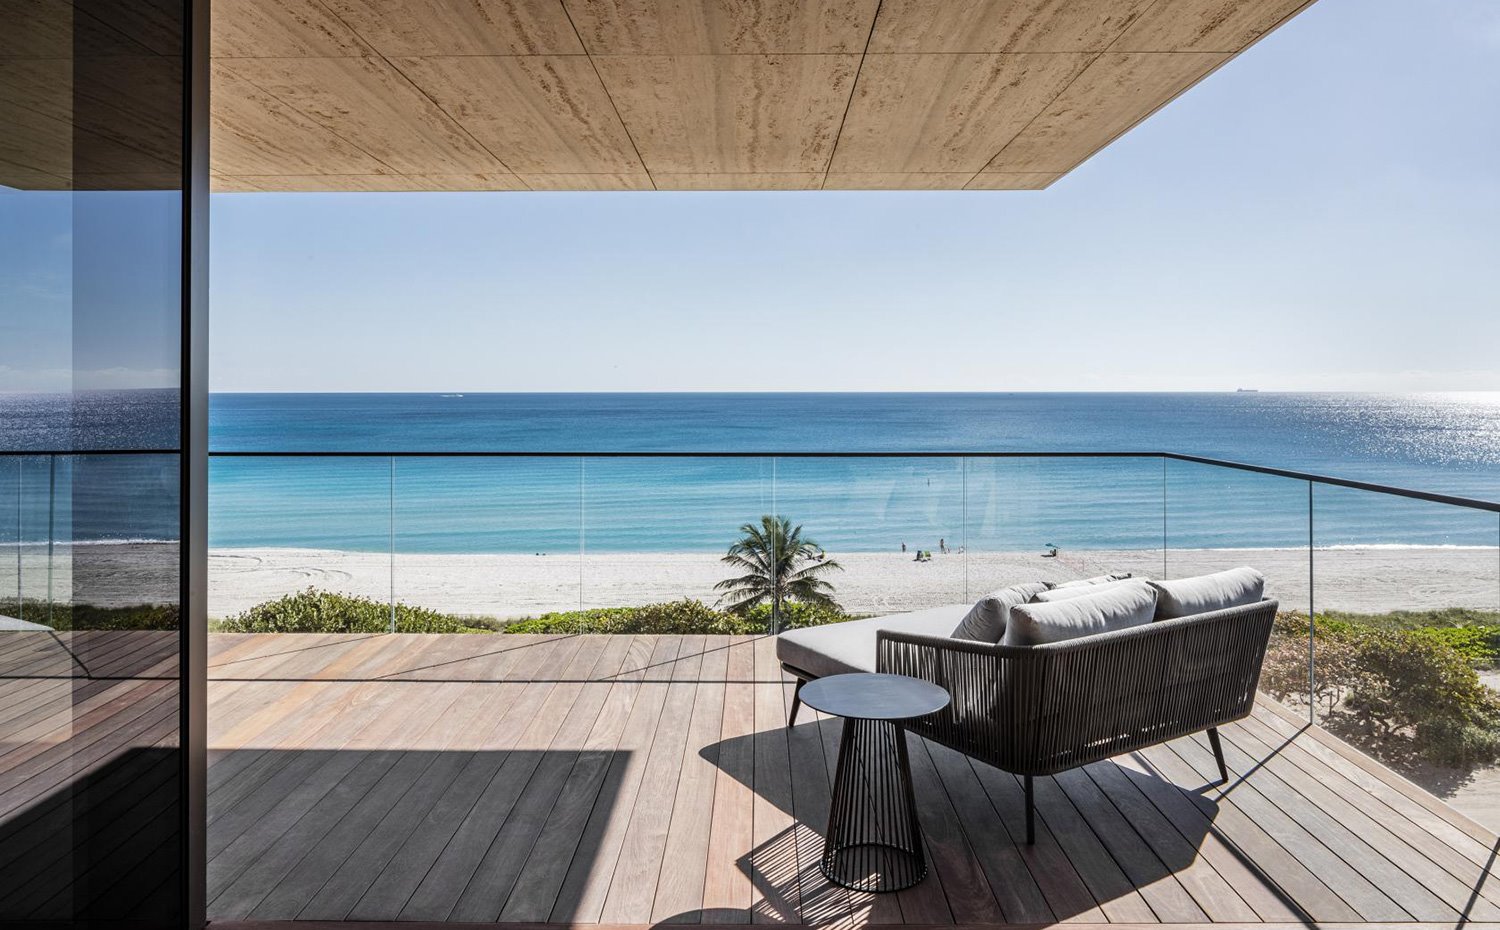 Terraza exterior con vistas a la playa con butaca y silla de exterior, suelo de madera